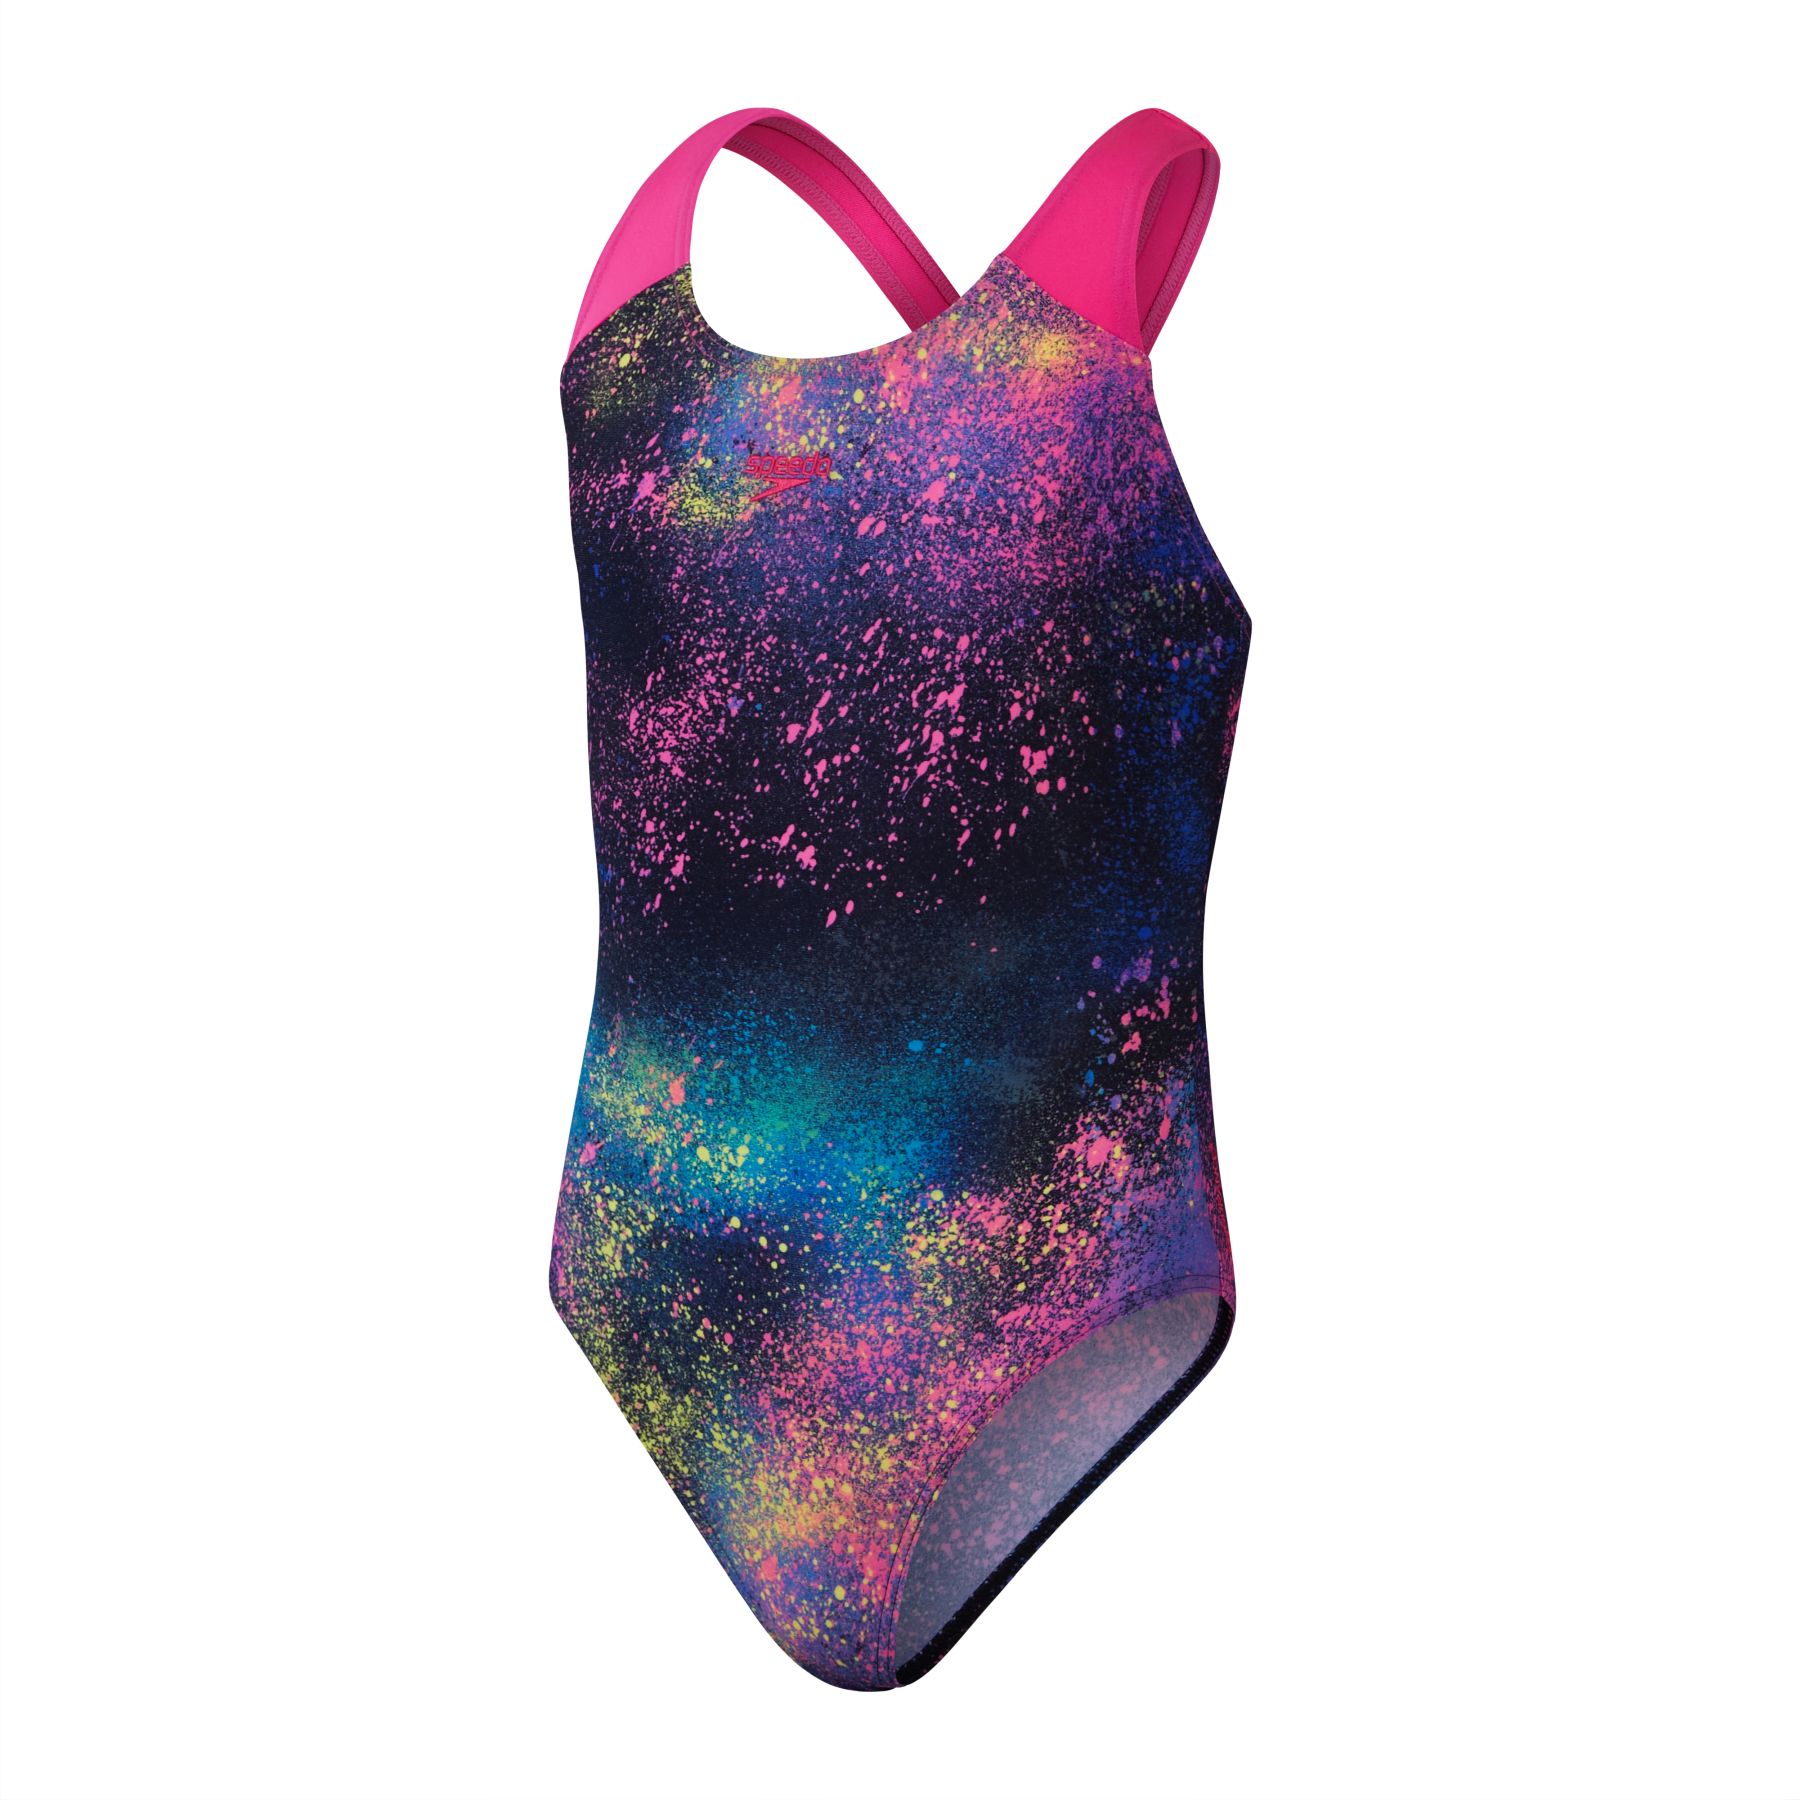 Produktbild von Speedo Digital Allover Splashback Badeanzug Mädchen - black/flare pink/bolt/lemon drizzle/true cobalt